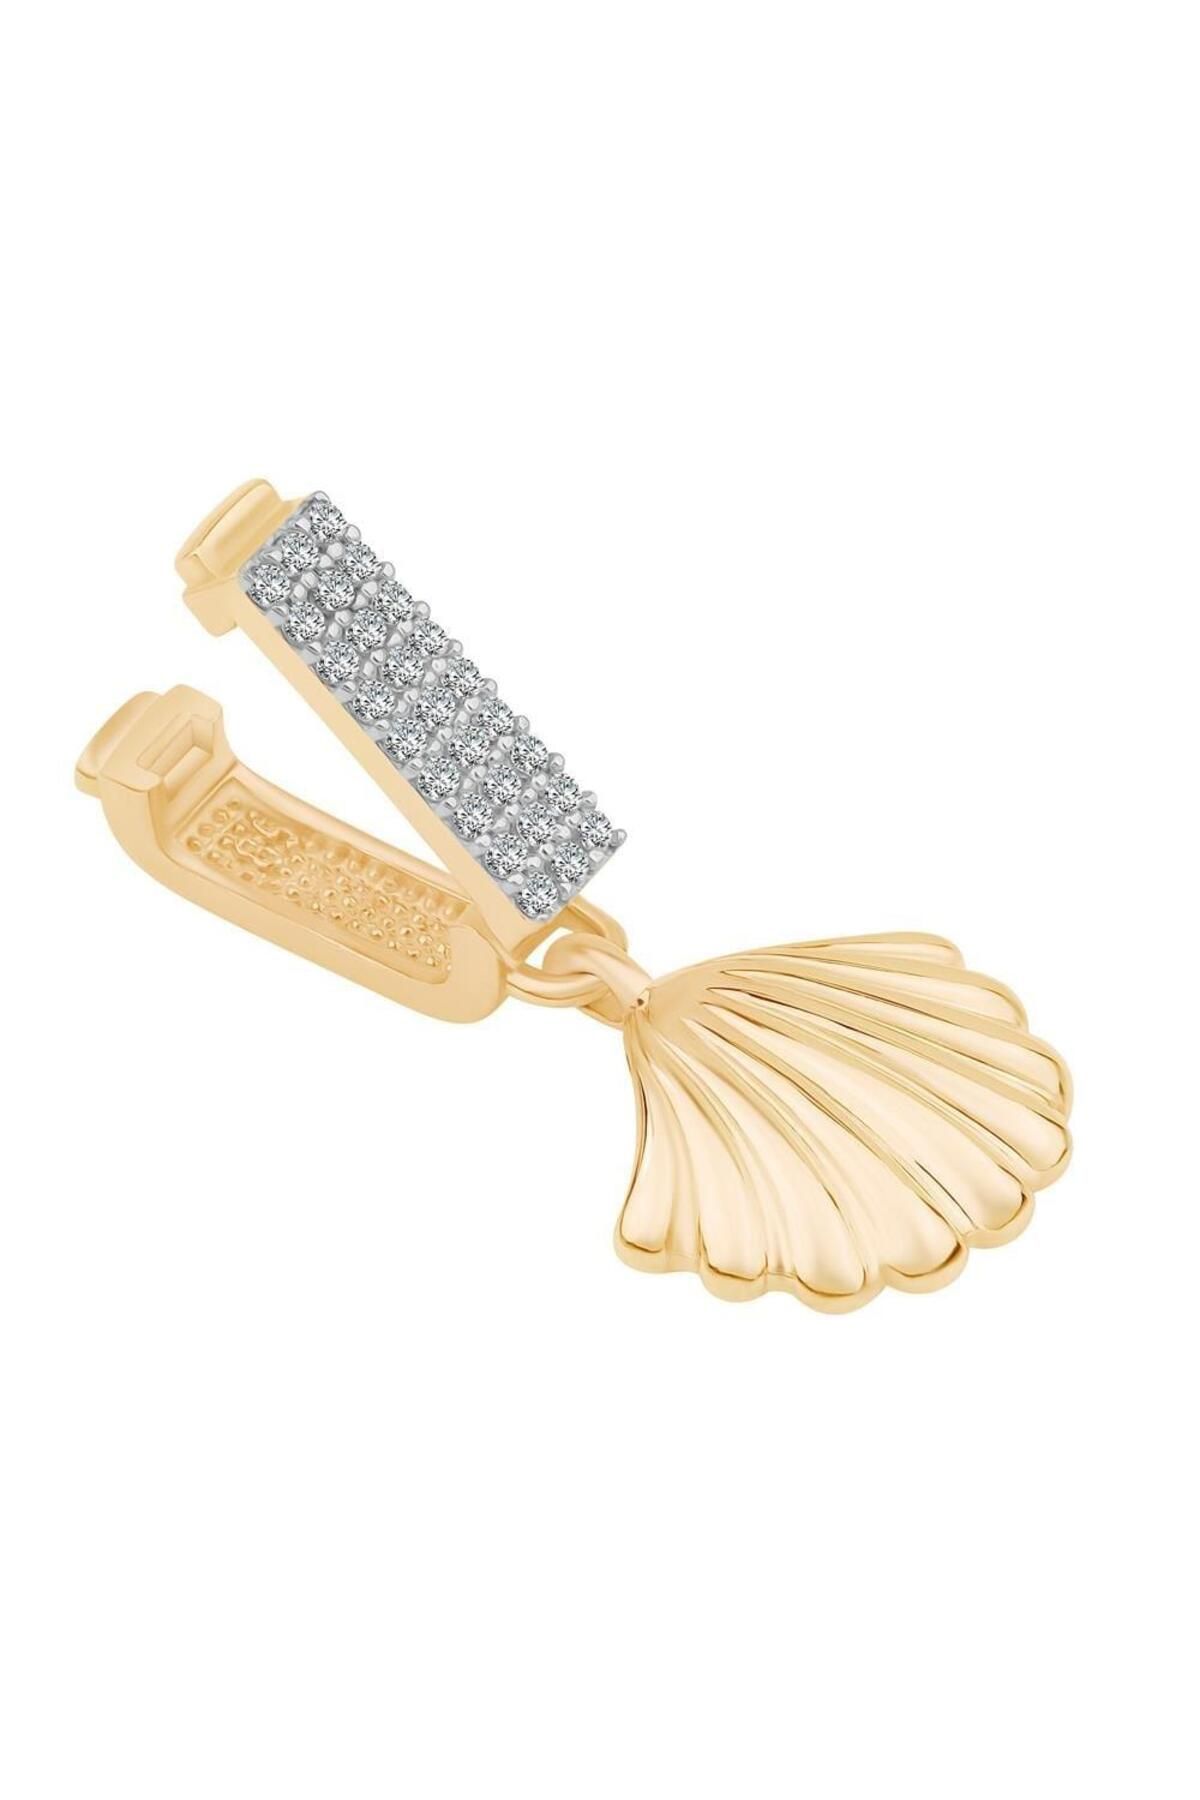 Ema Jewellery Altın Deniz Kabuğu Sallantılı 9mm Bileklik Charm